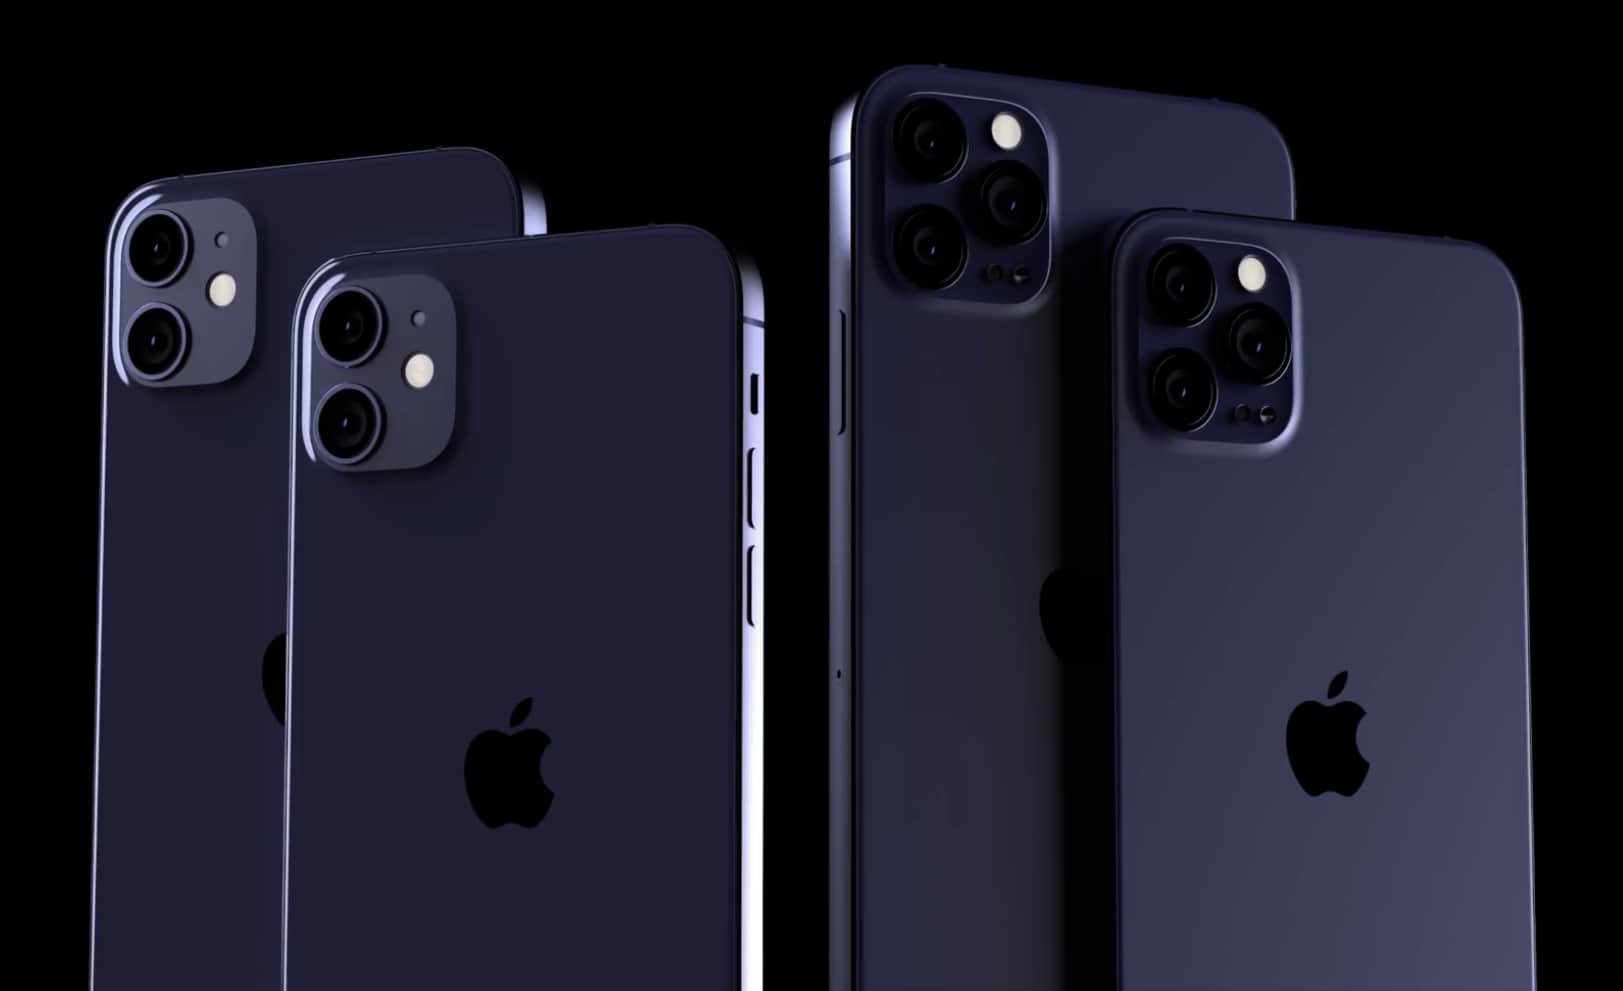 iPhone 2020 có thể sẽ thay màu xanh rêu Midnight Green thành xanh navy